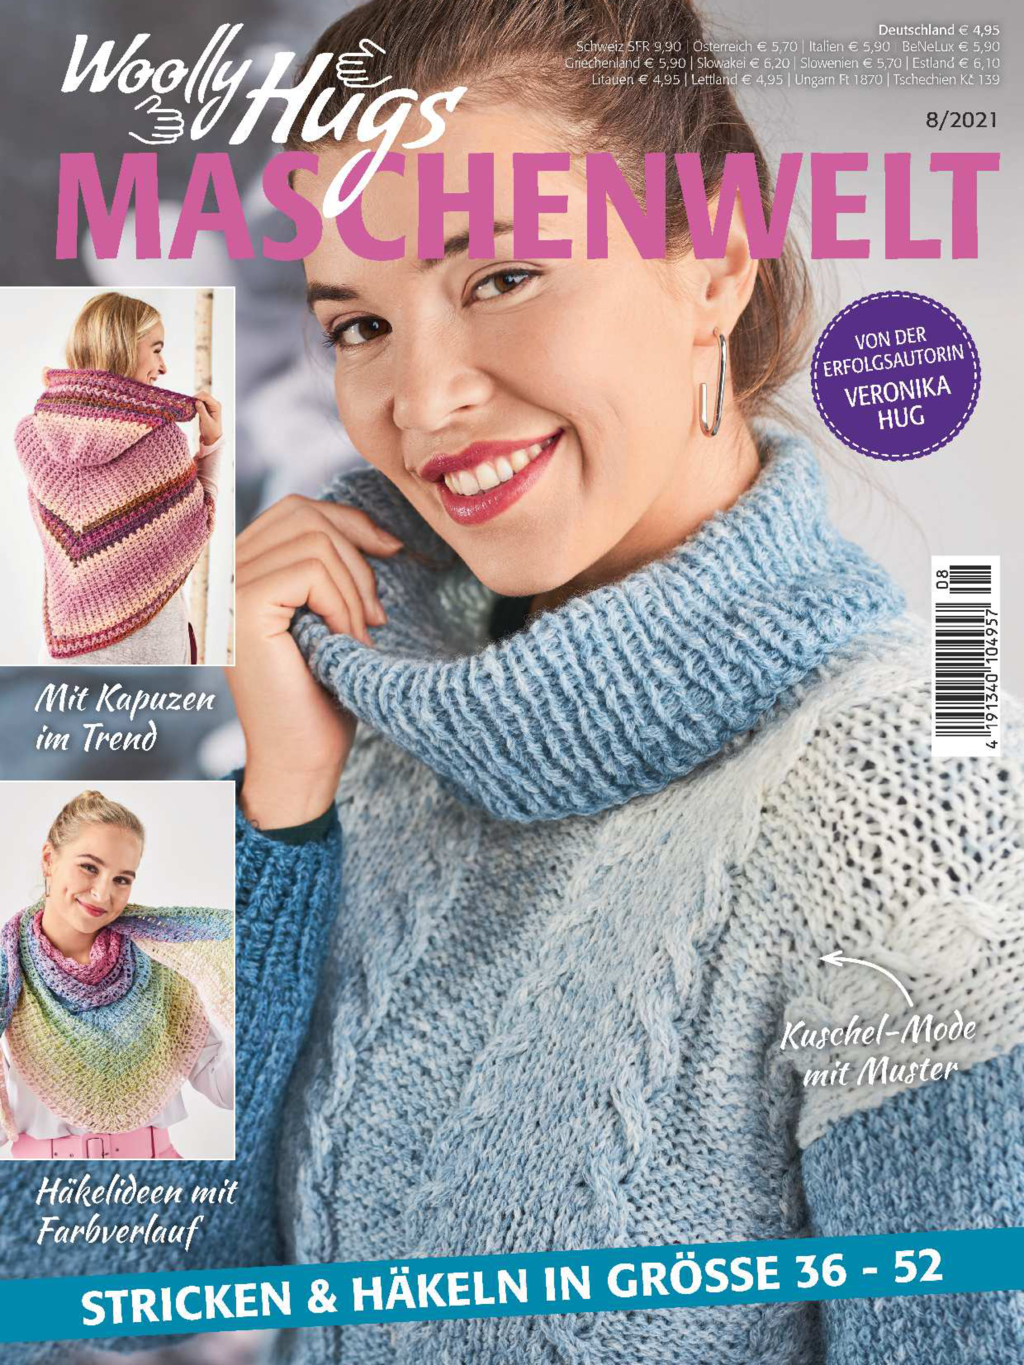 Woolly Hugs Maschenwelt  Nr. 8/2021 - Stricken & Häkeln in Grösse 36 - 52